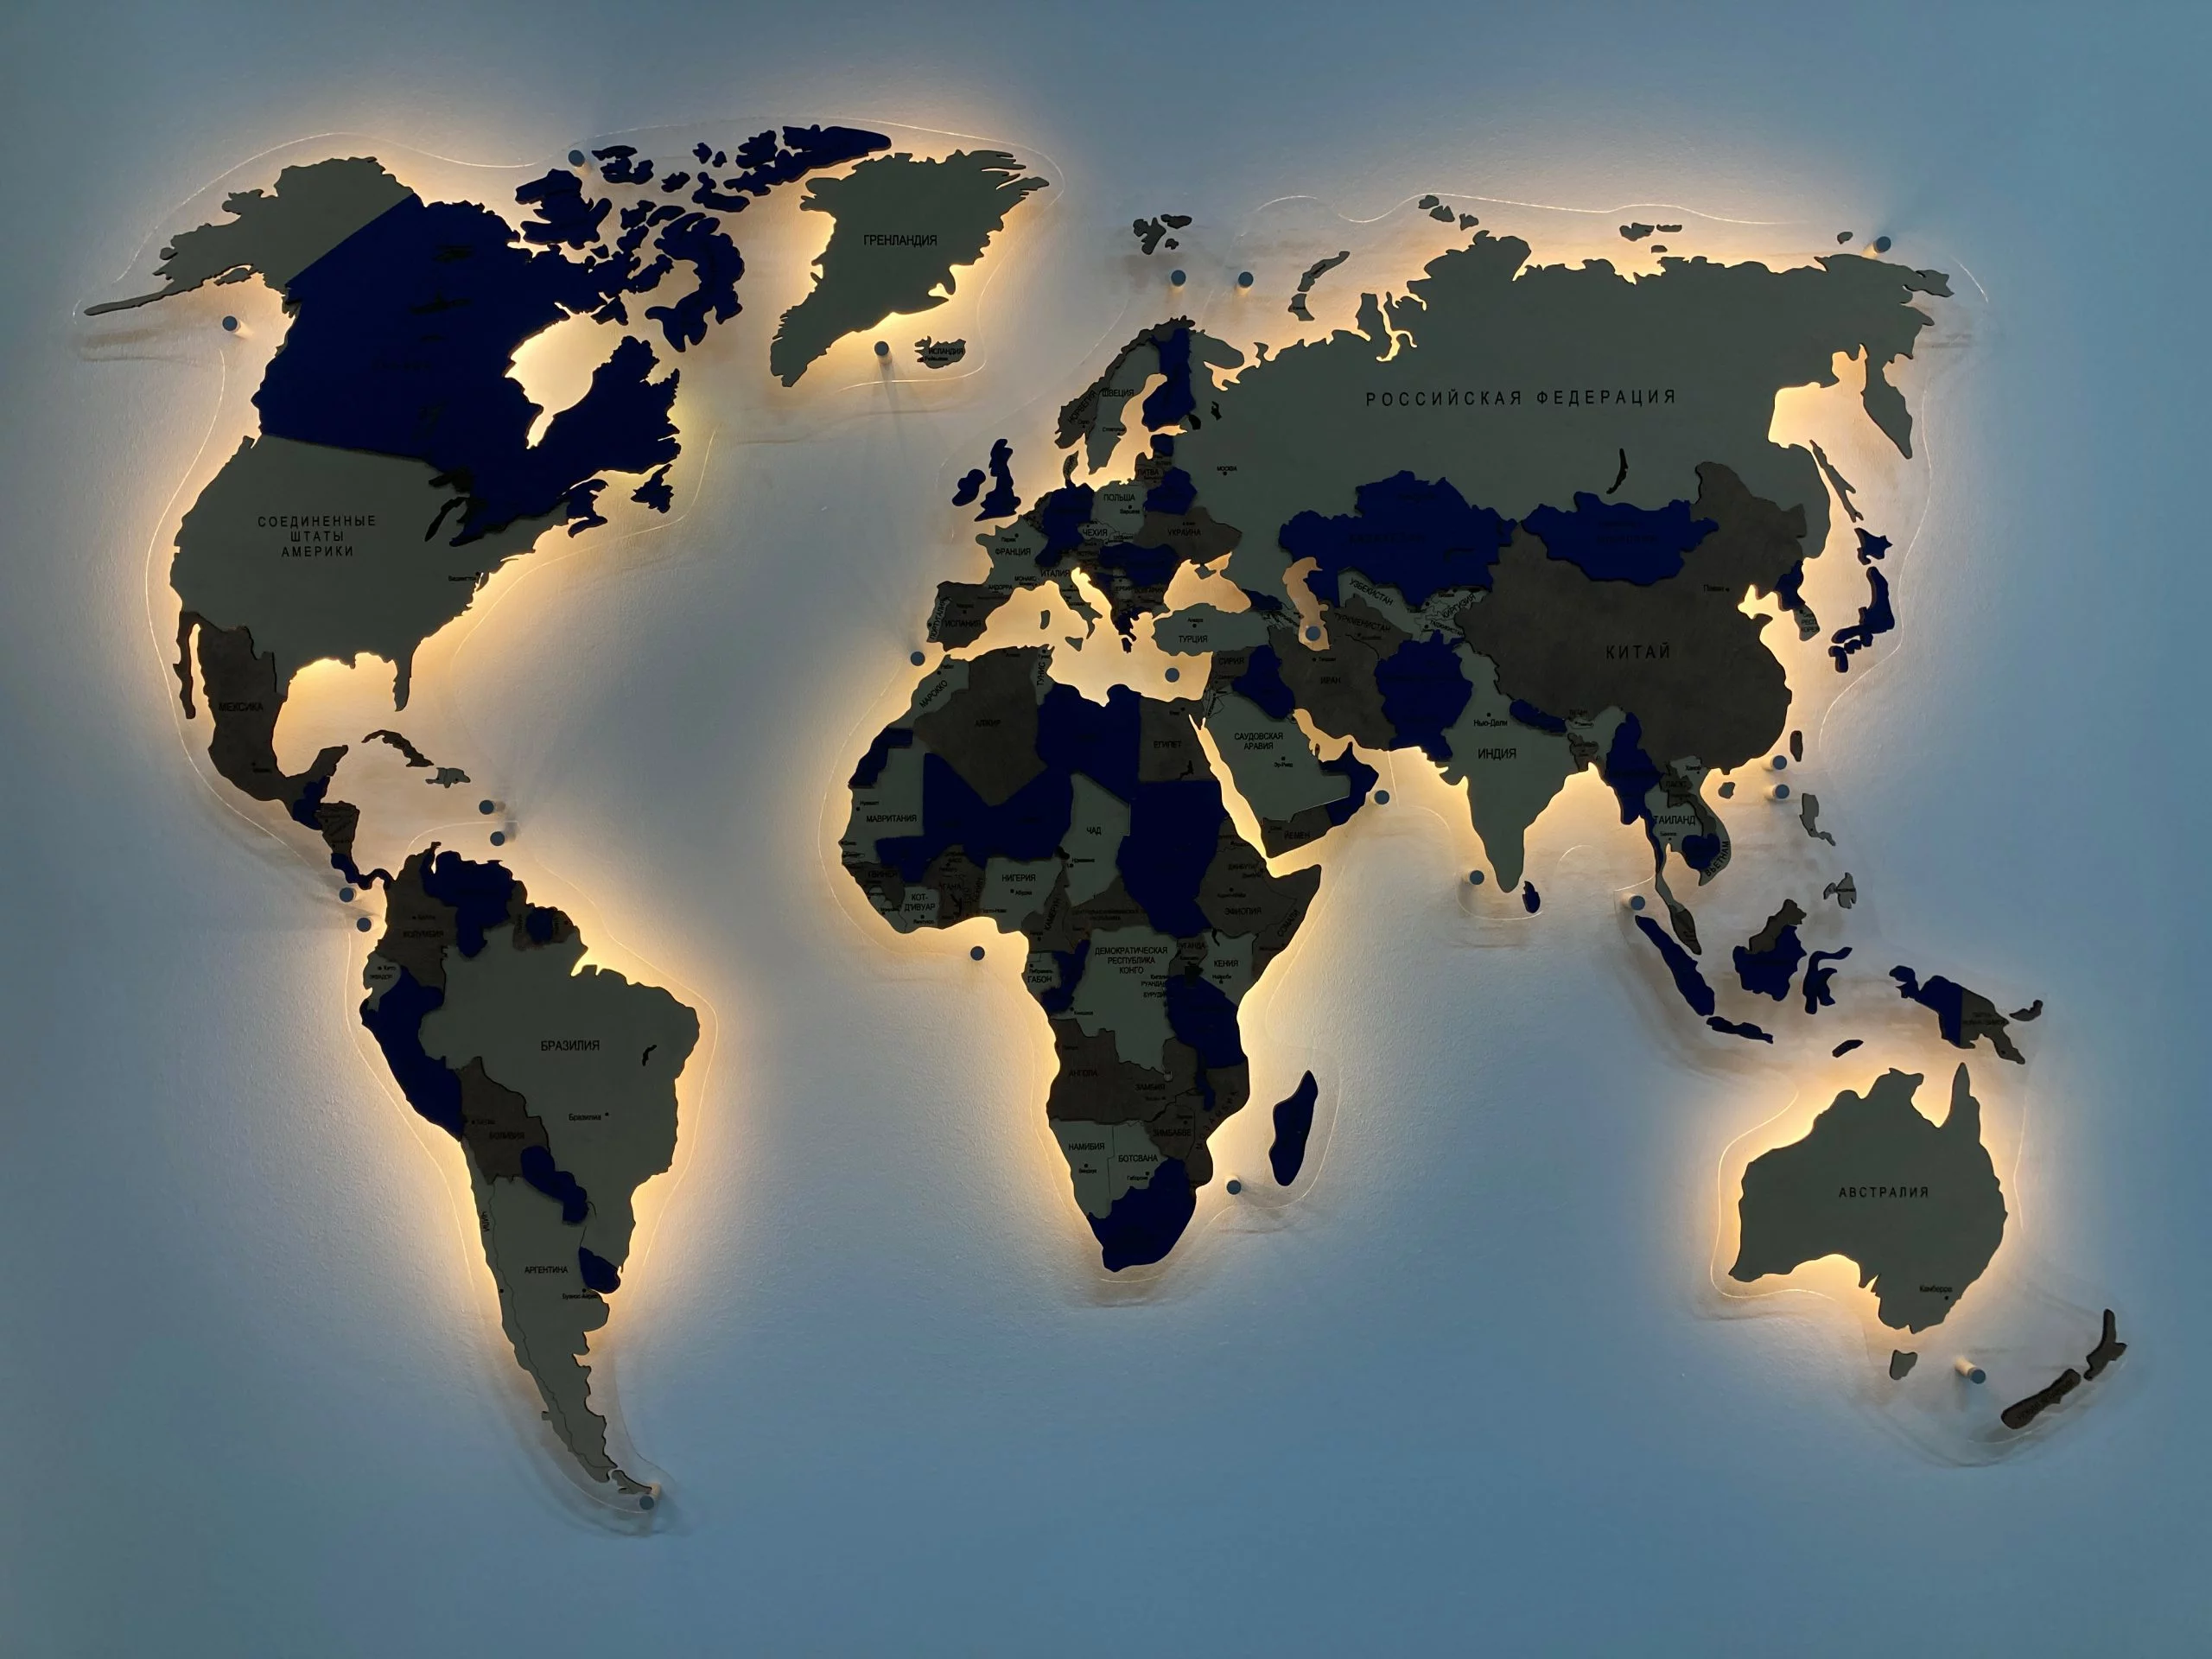 Карта мира многоуровневая (Индиго) в проекции Каврайского с подсветкой